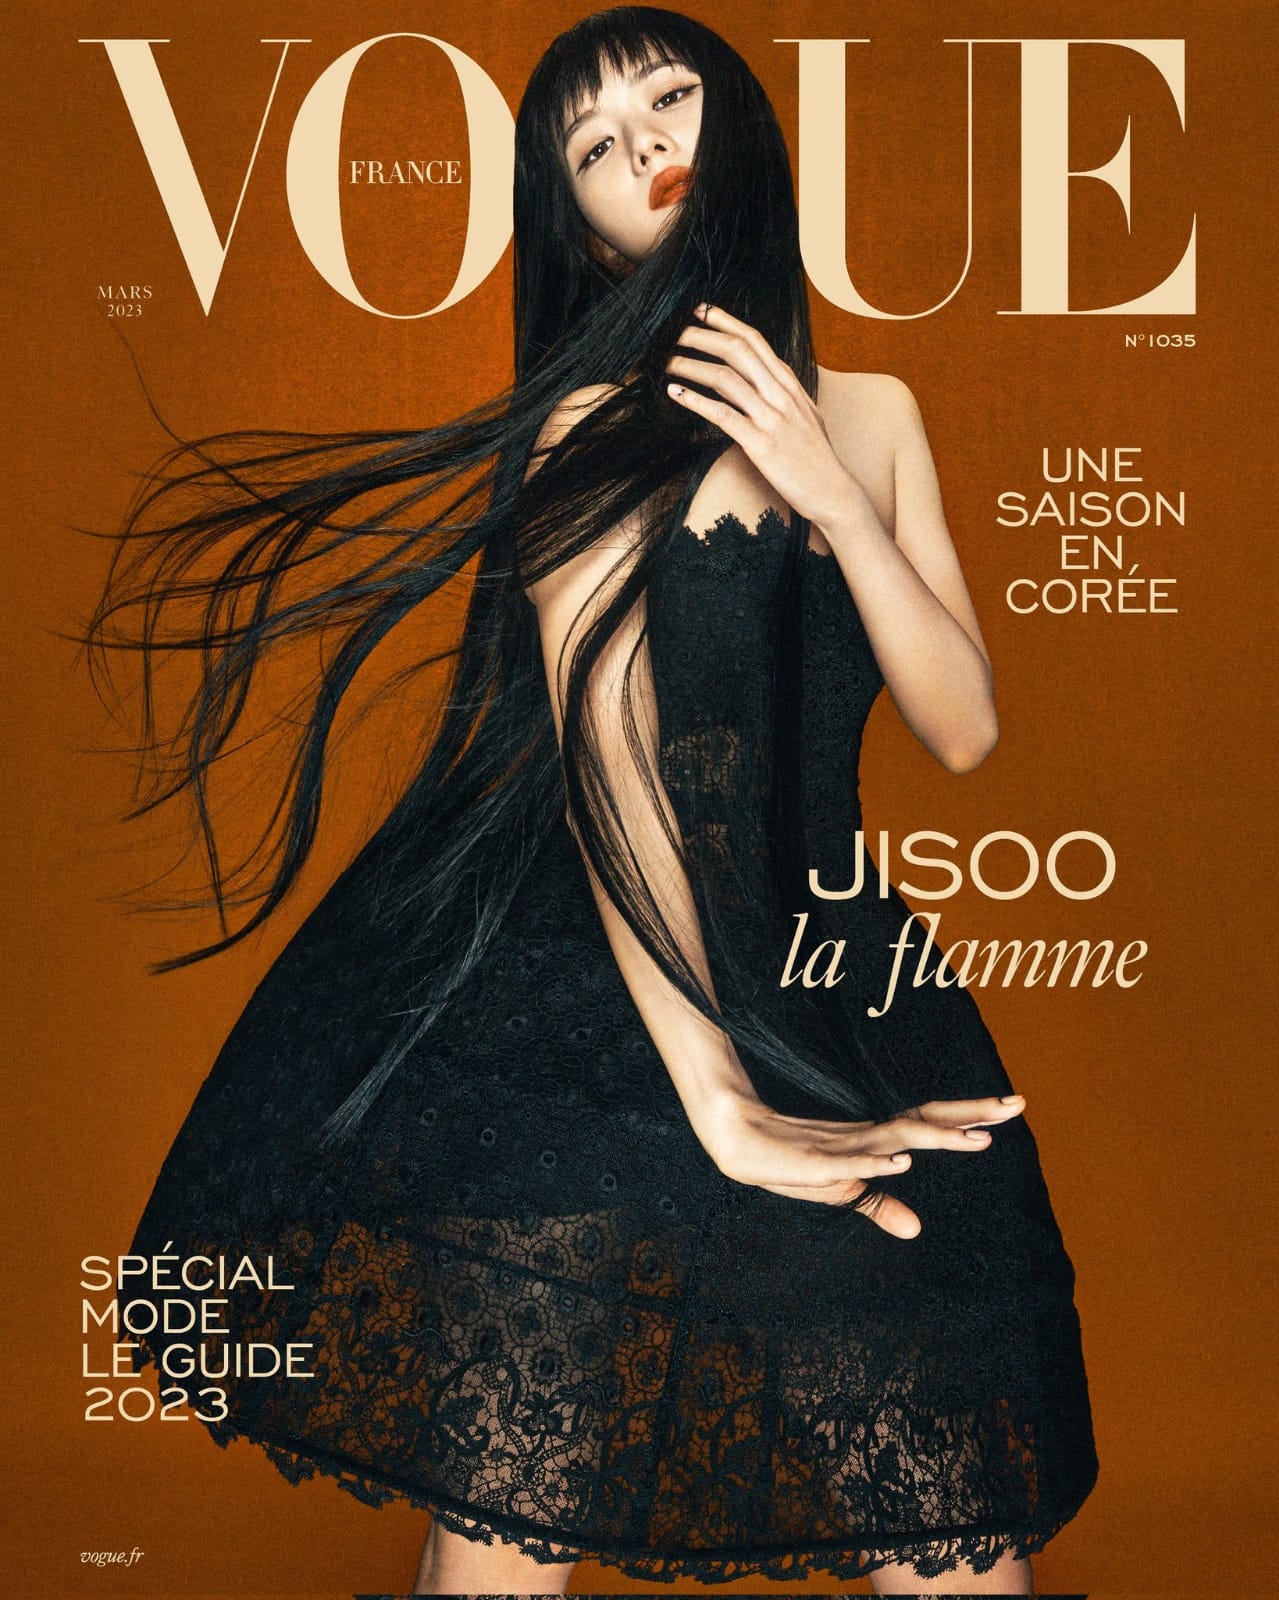 Jisoo Menjadi Bintang Sampul Majalah Vogue France edisi Maret 2023